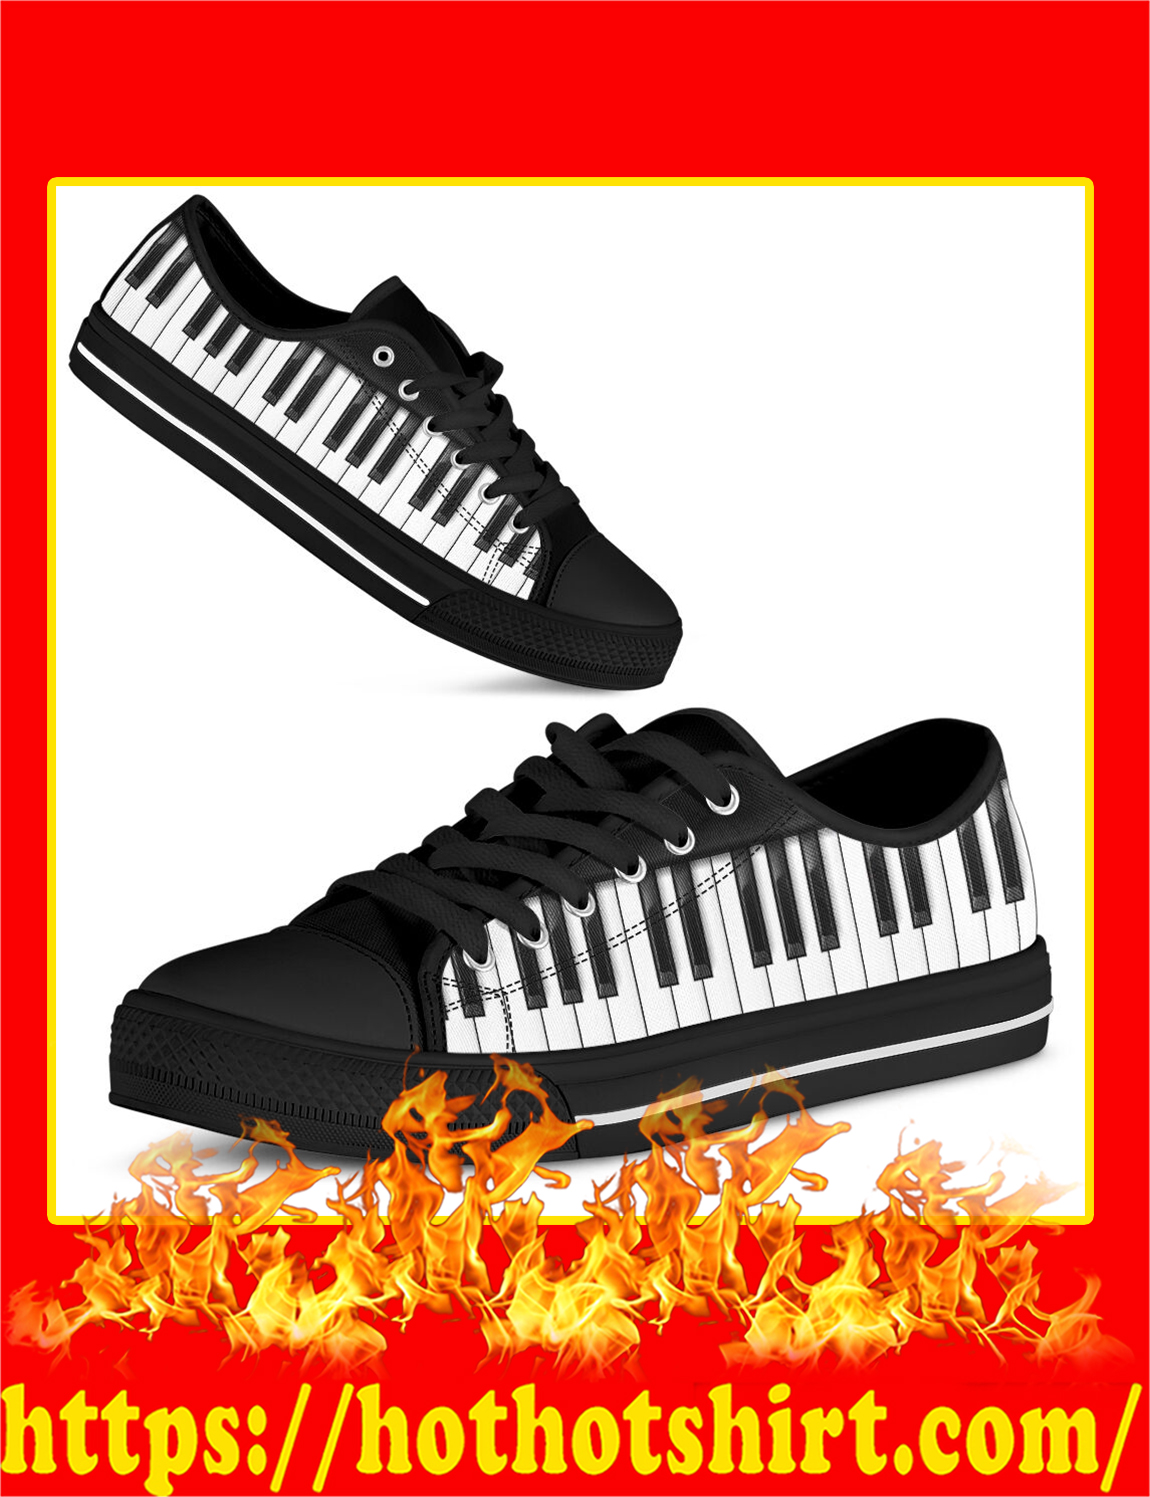 Piano Keyboard Shortcut Low Top Shoes